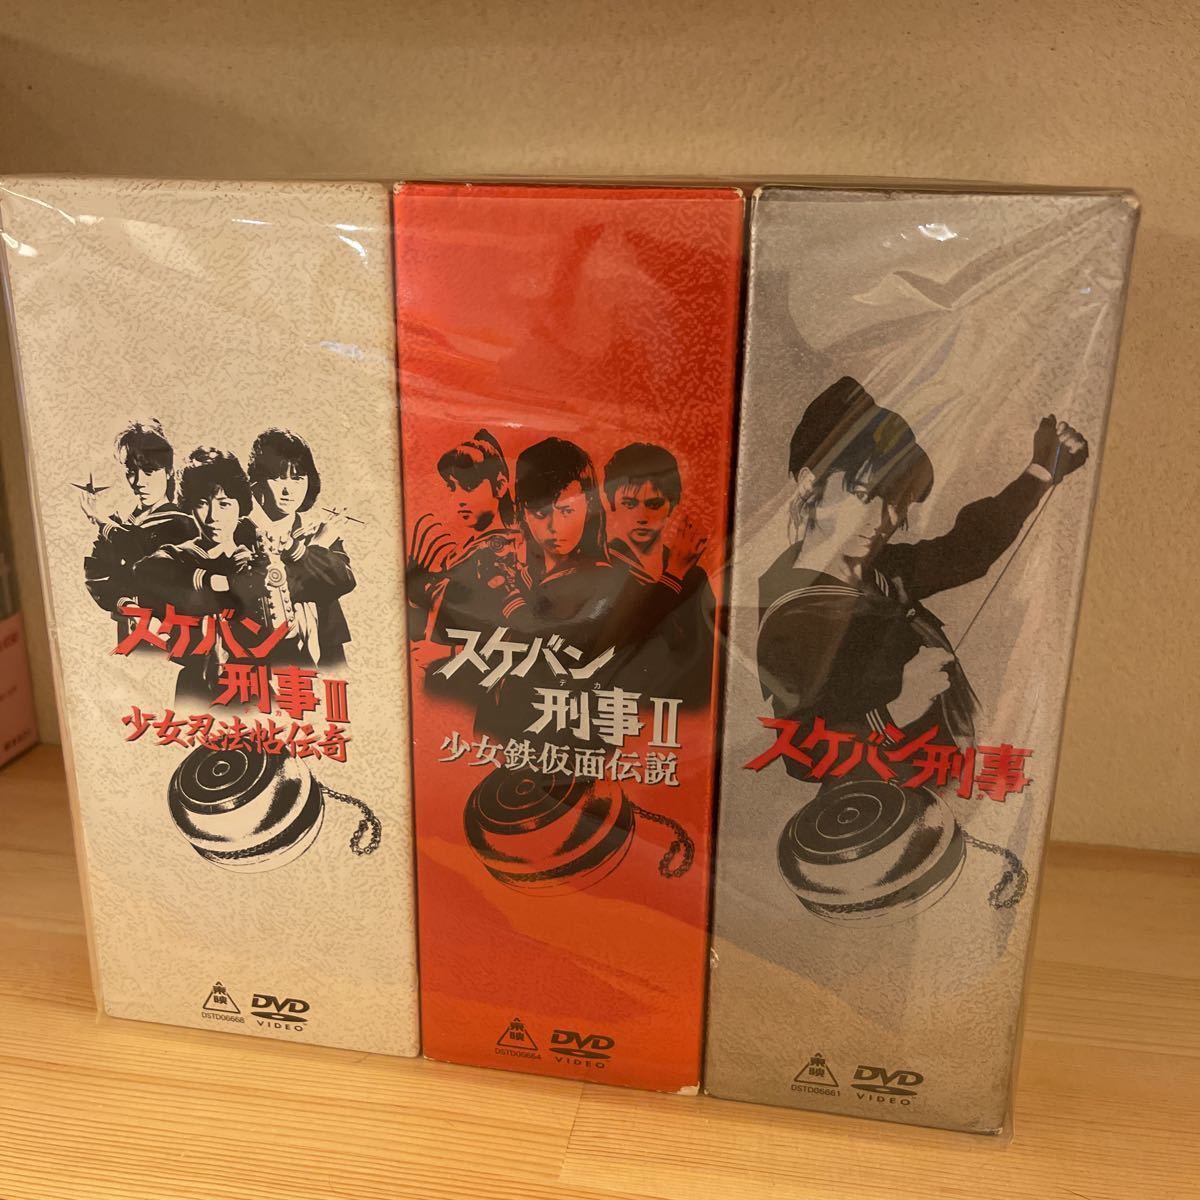 スケバン刑事 DVD 全シリーズセット